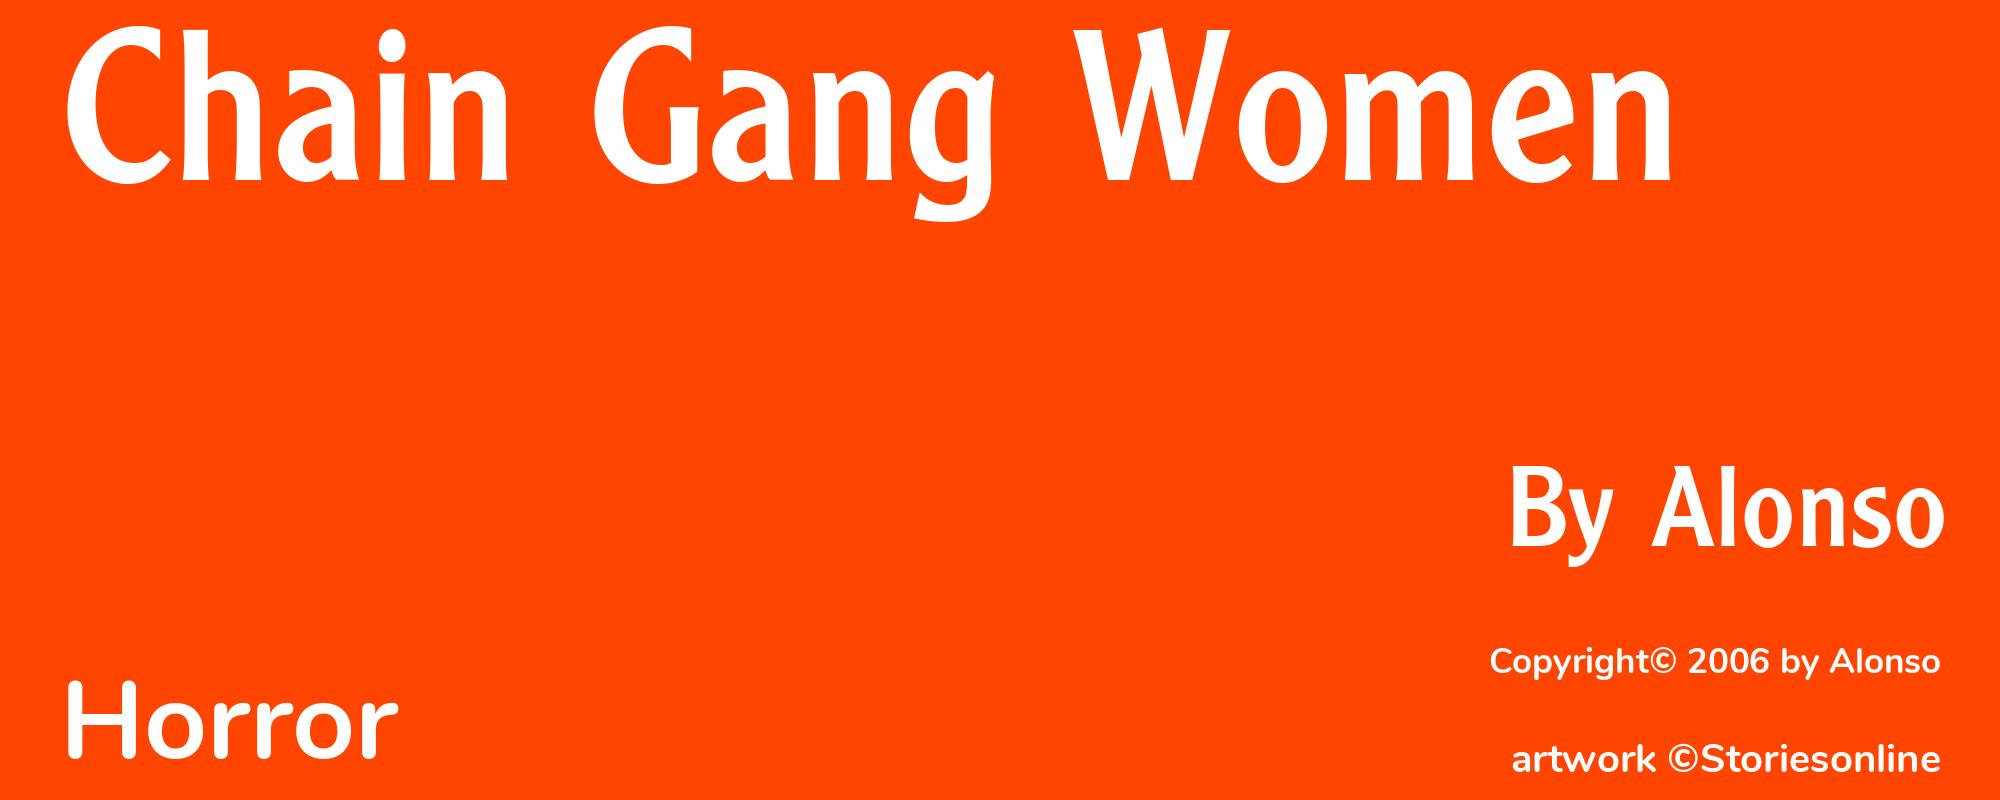 Chain Gang Women - Cover